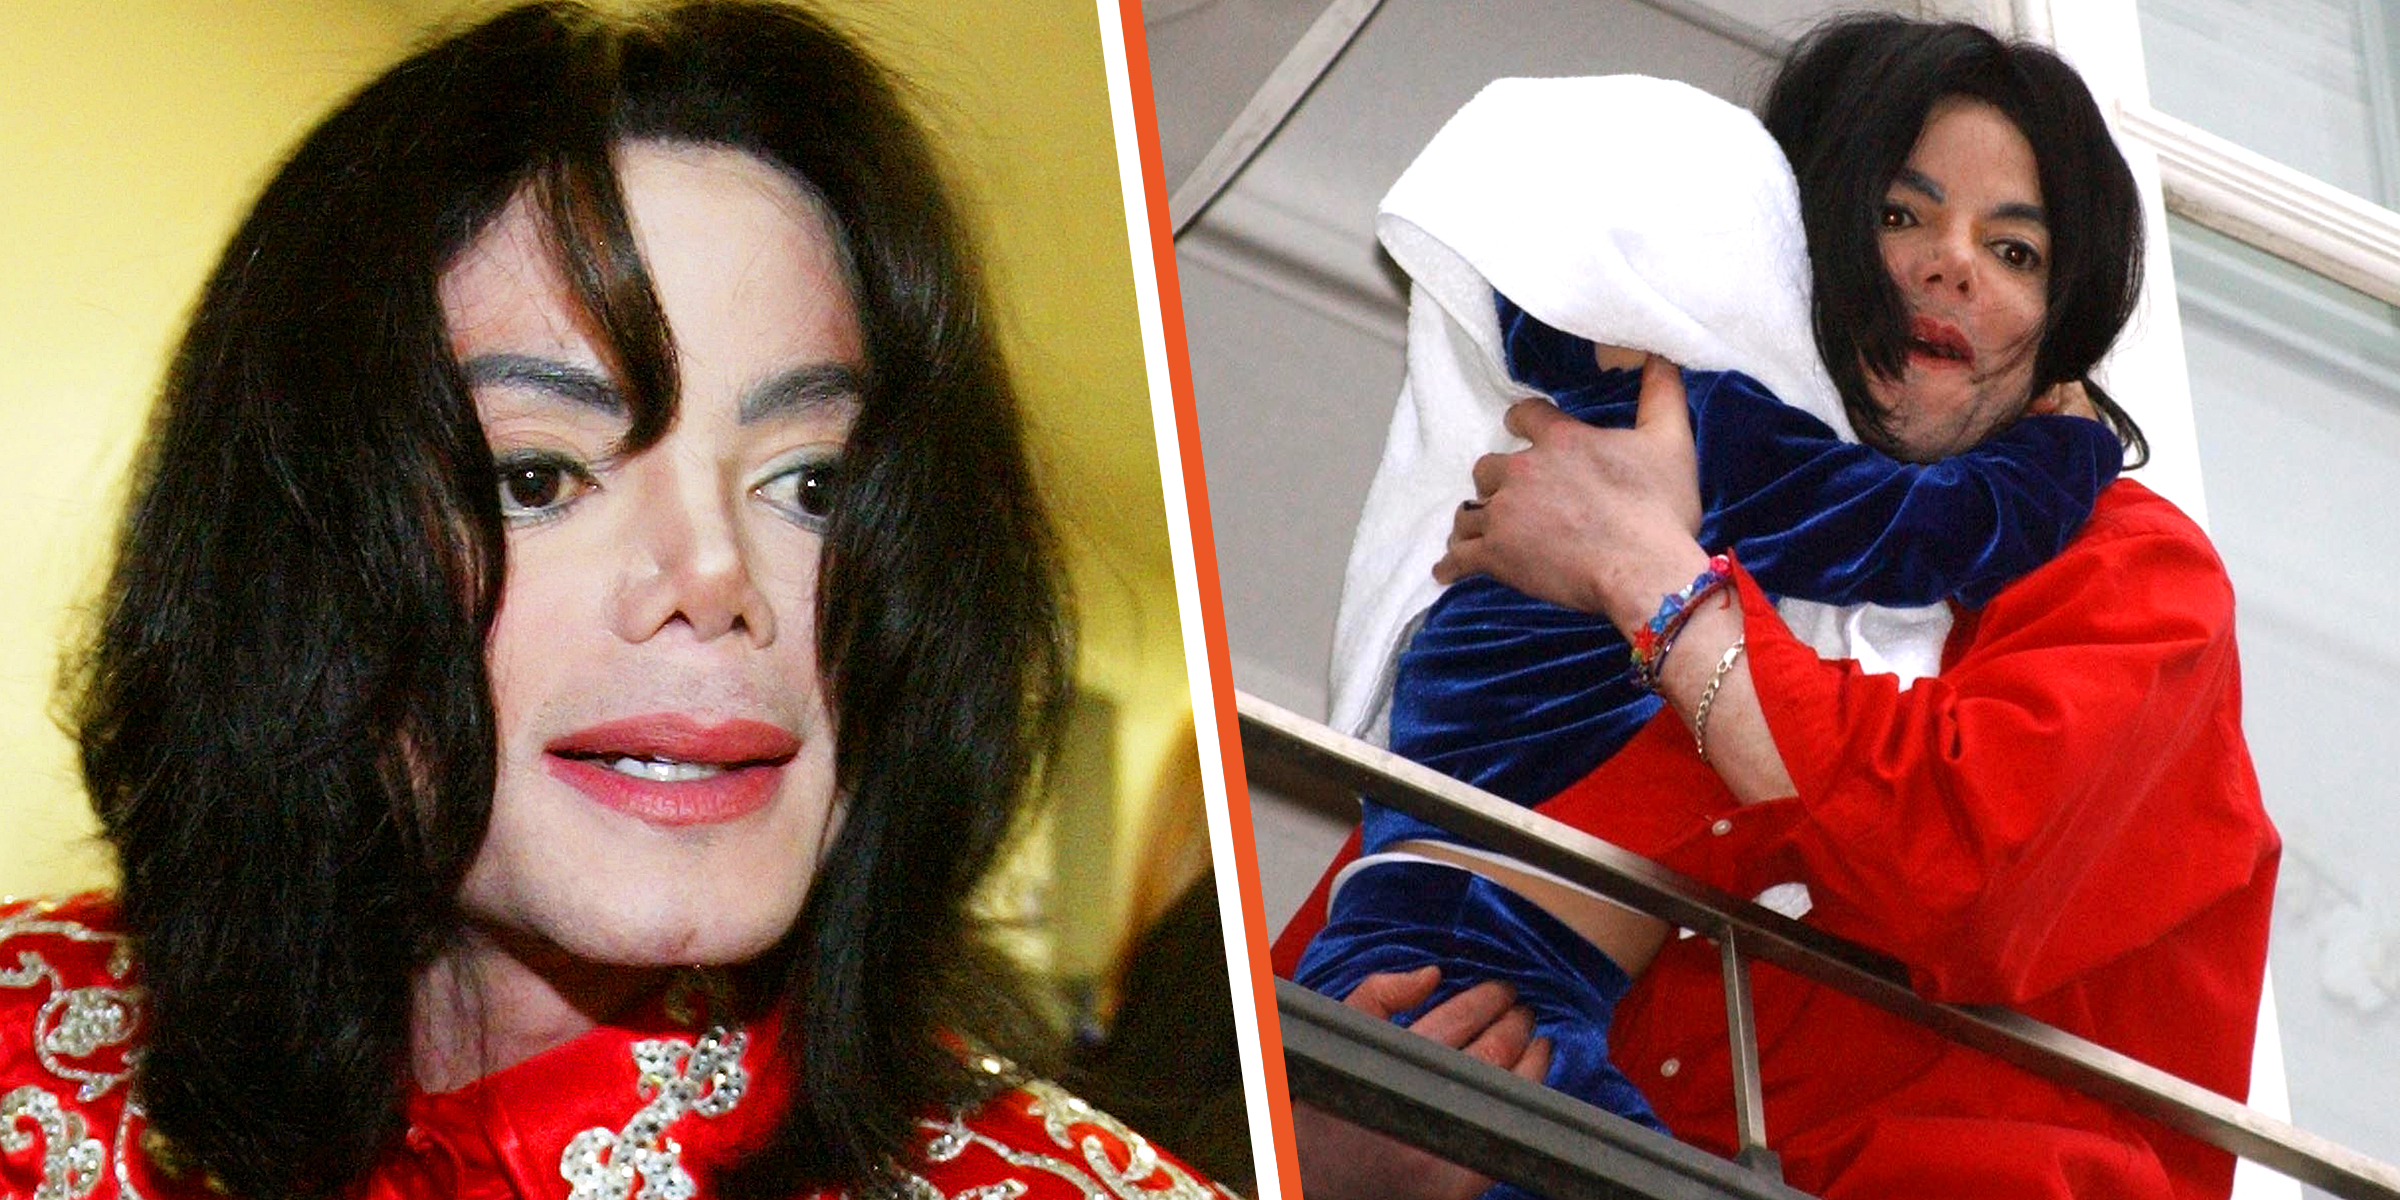 Michael Jackson, 2004 | Michael Jackson and Paris Jackson, 2002 | Source: Getty Images